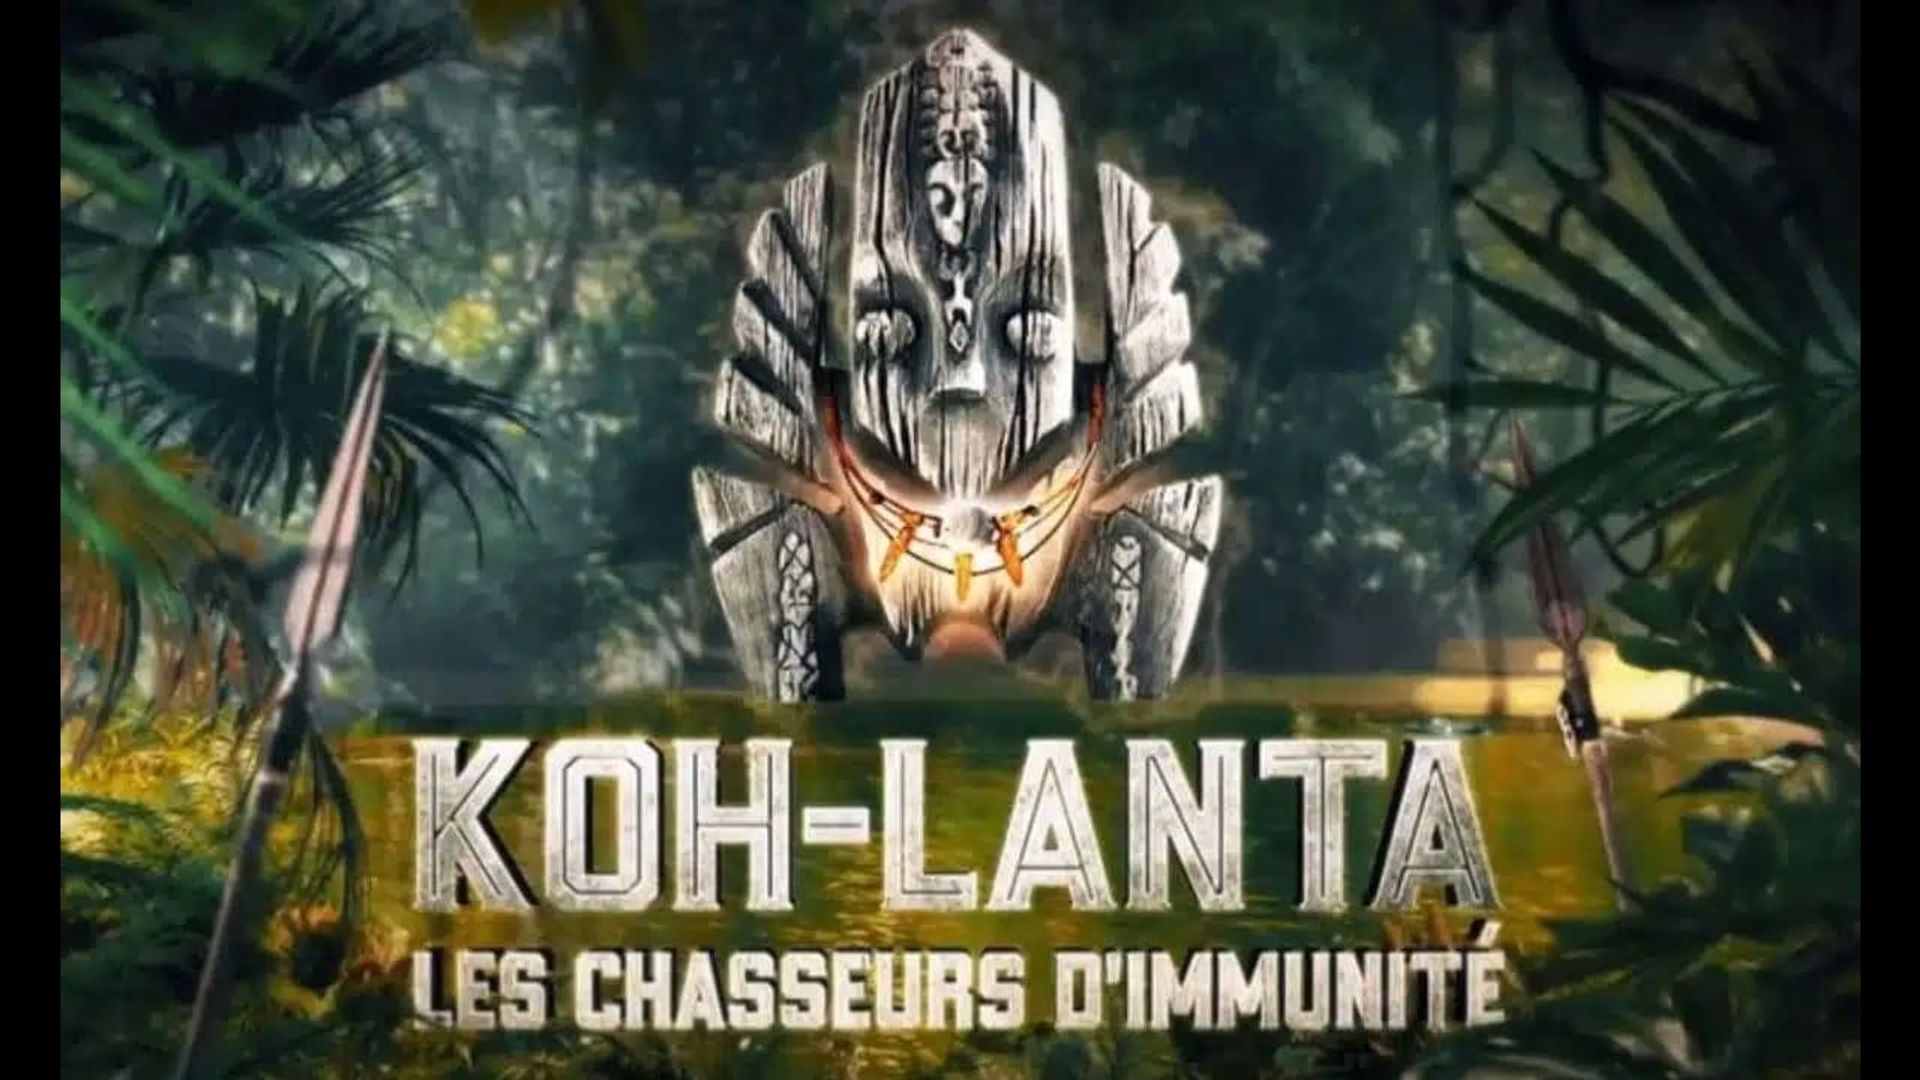 Les aventuriers de Koh-Lanta background